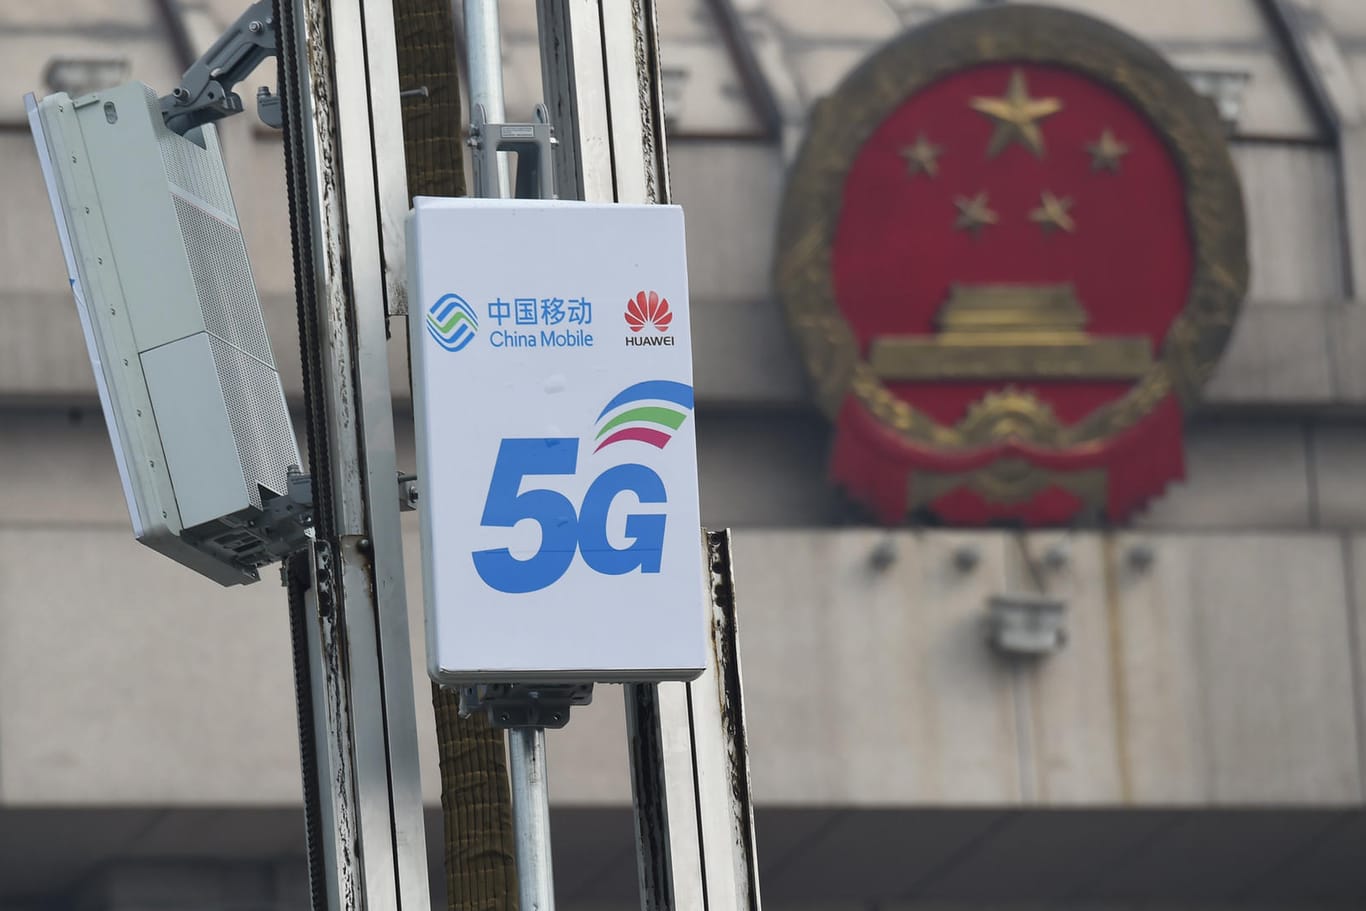 5G-Antenne von China Mobile und Huawei vor dem Nationalkongress in Peking: Zu nah am Staat?